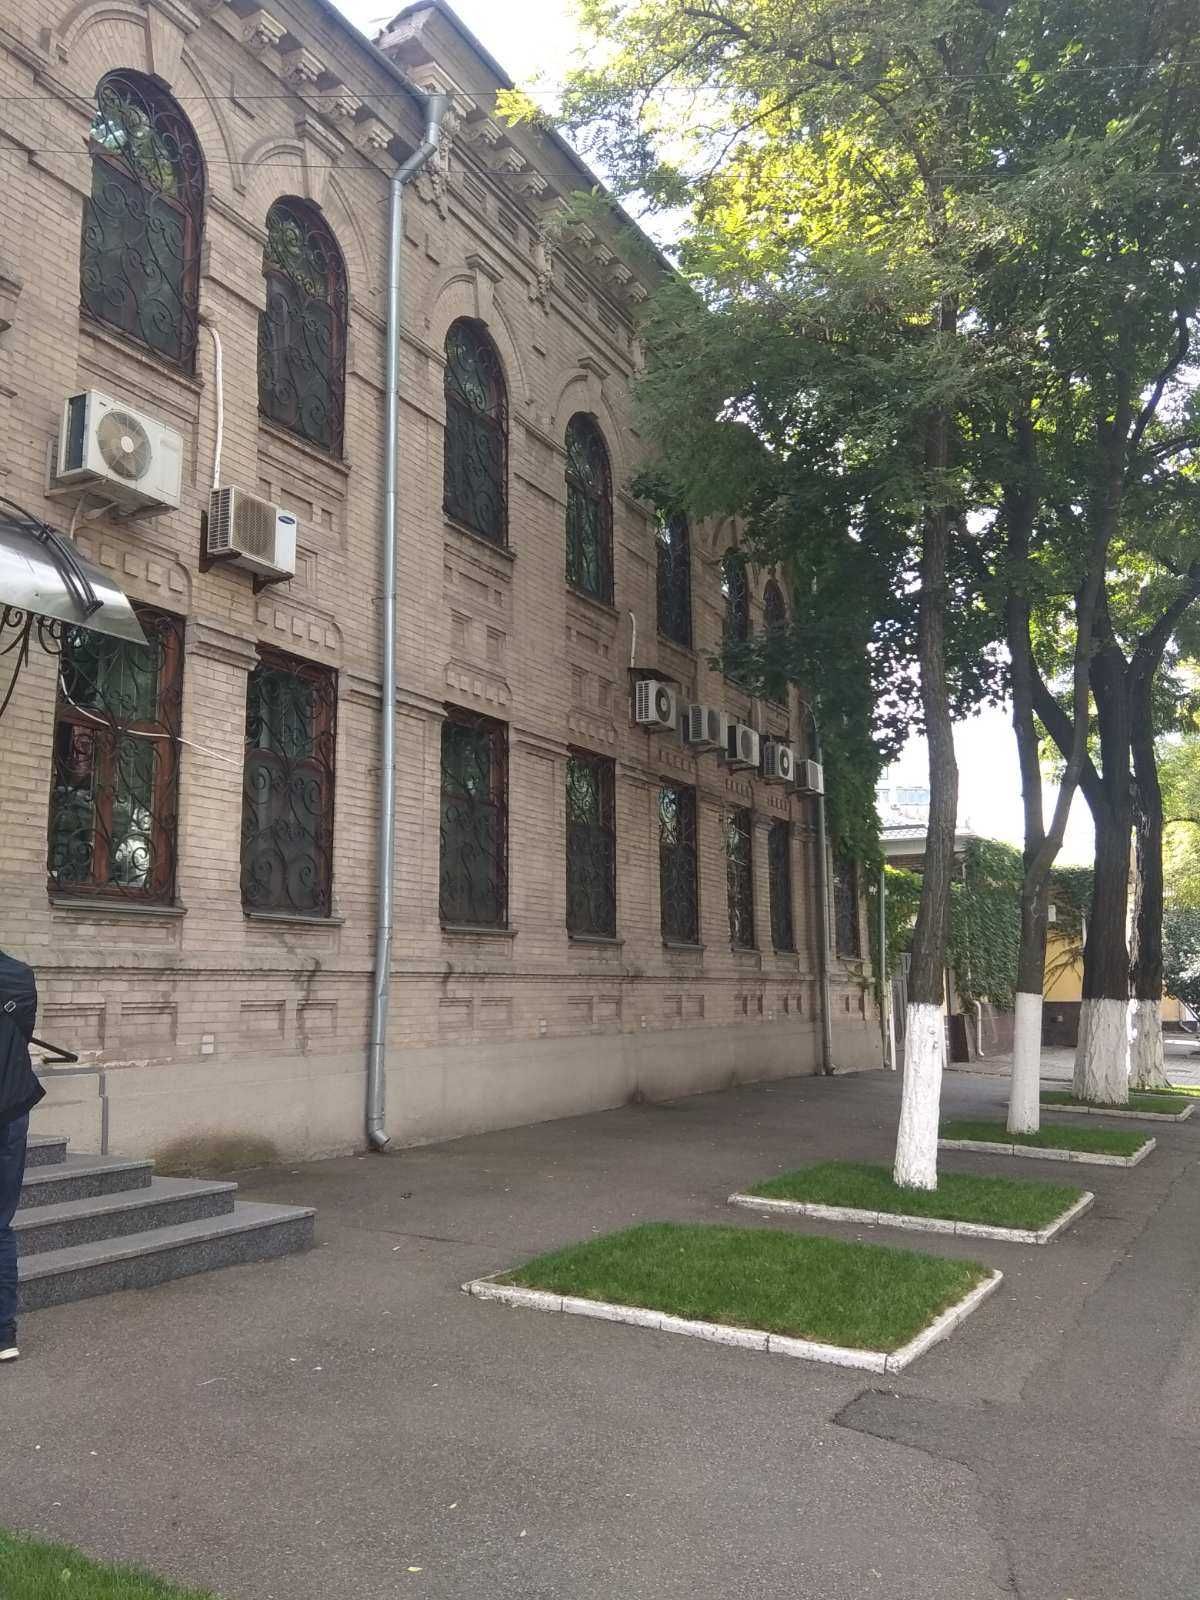 Аренда Офиса в центре на Ворошилова с ремонтом 450 м.кв